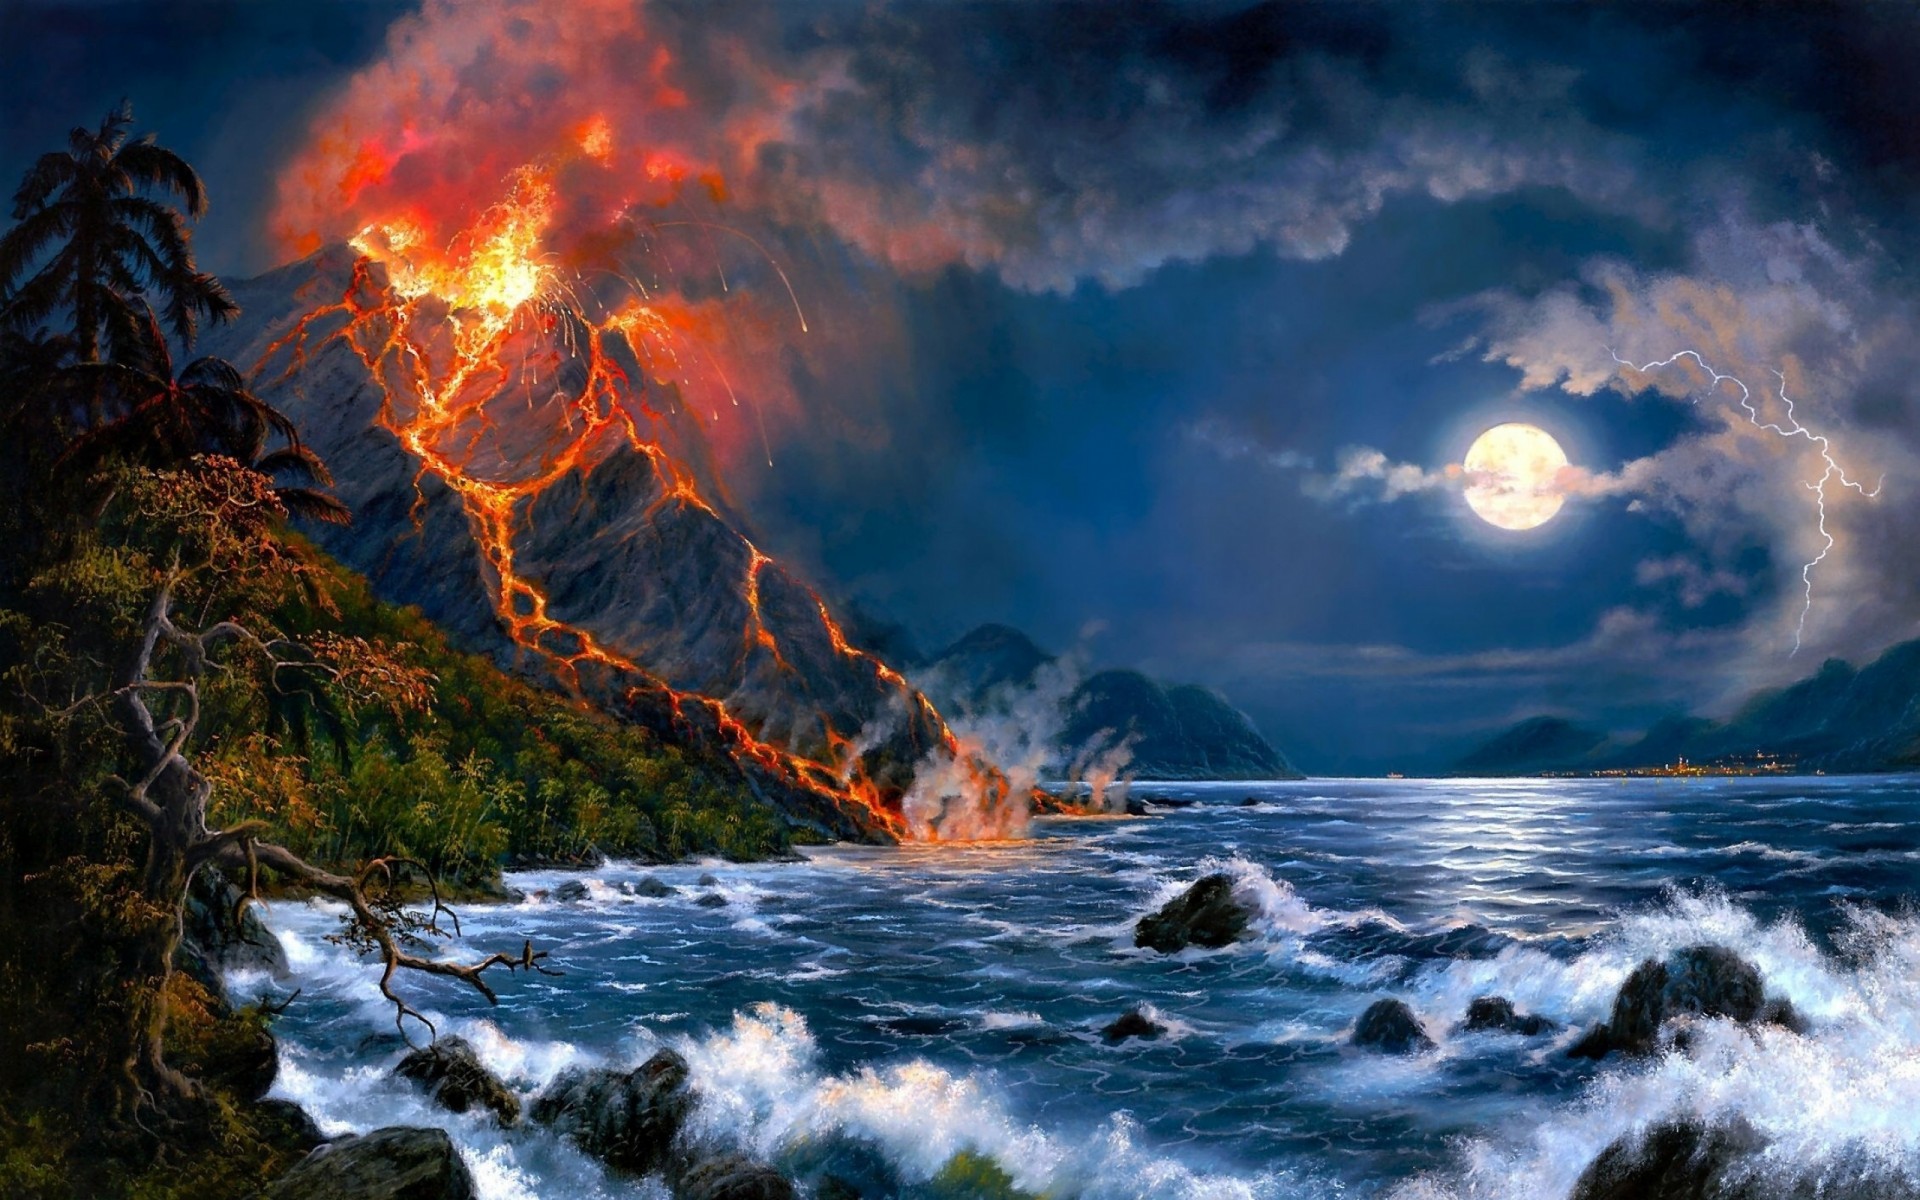 Volcano Eruption in the Sea